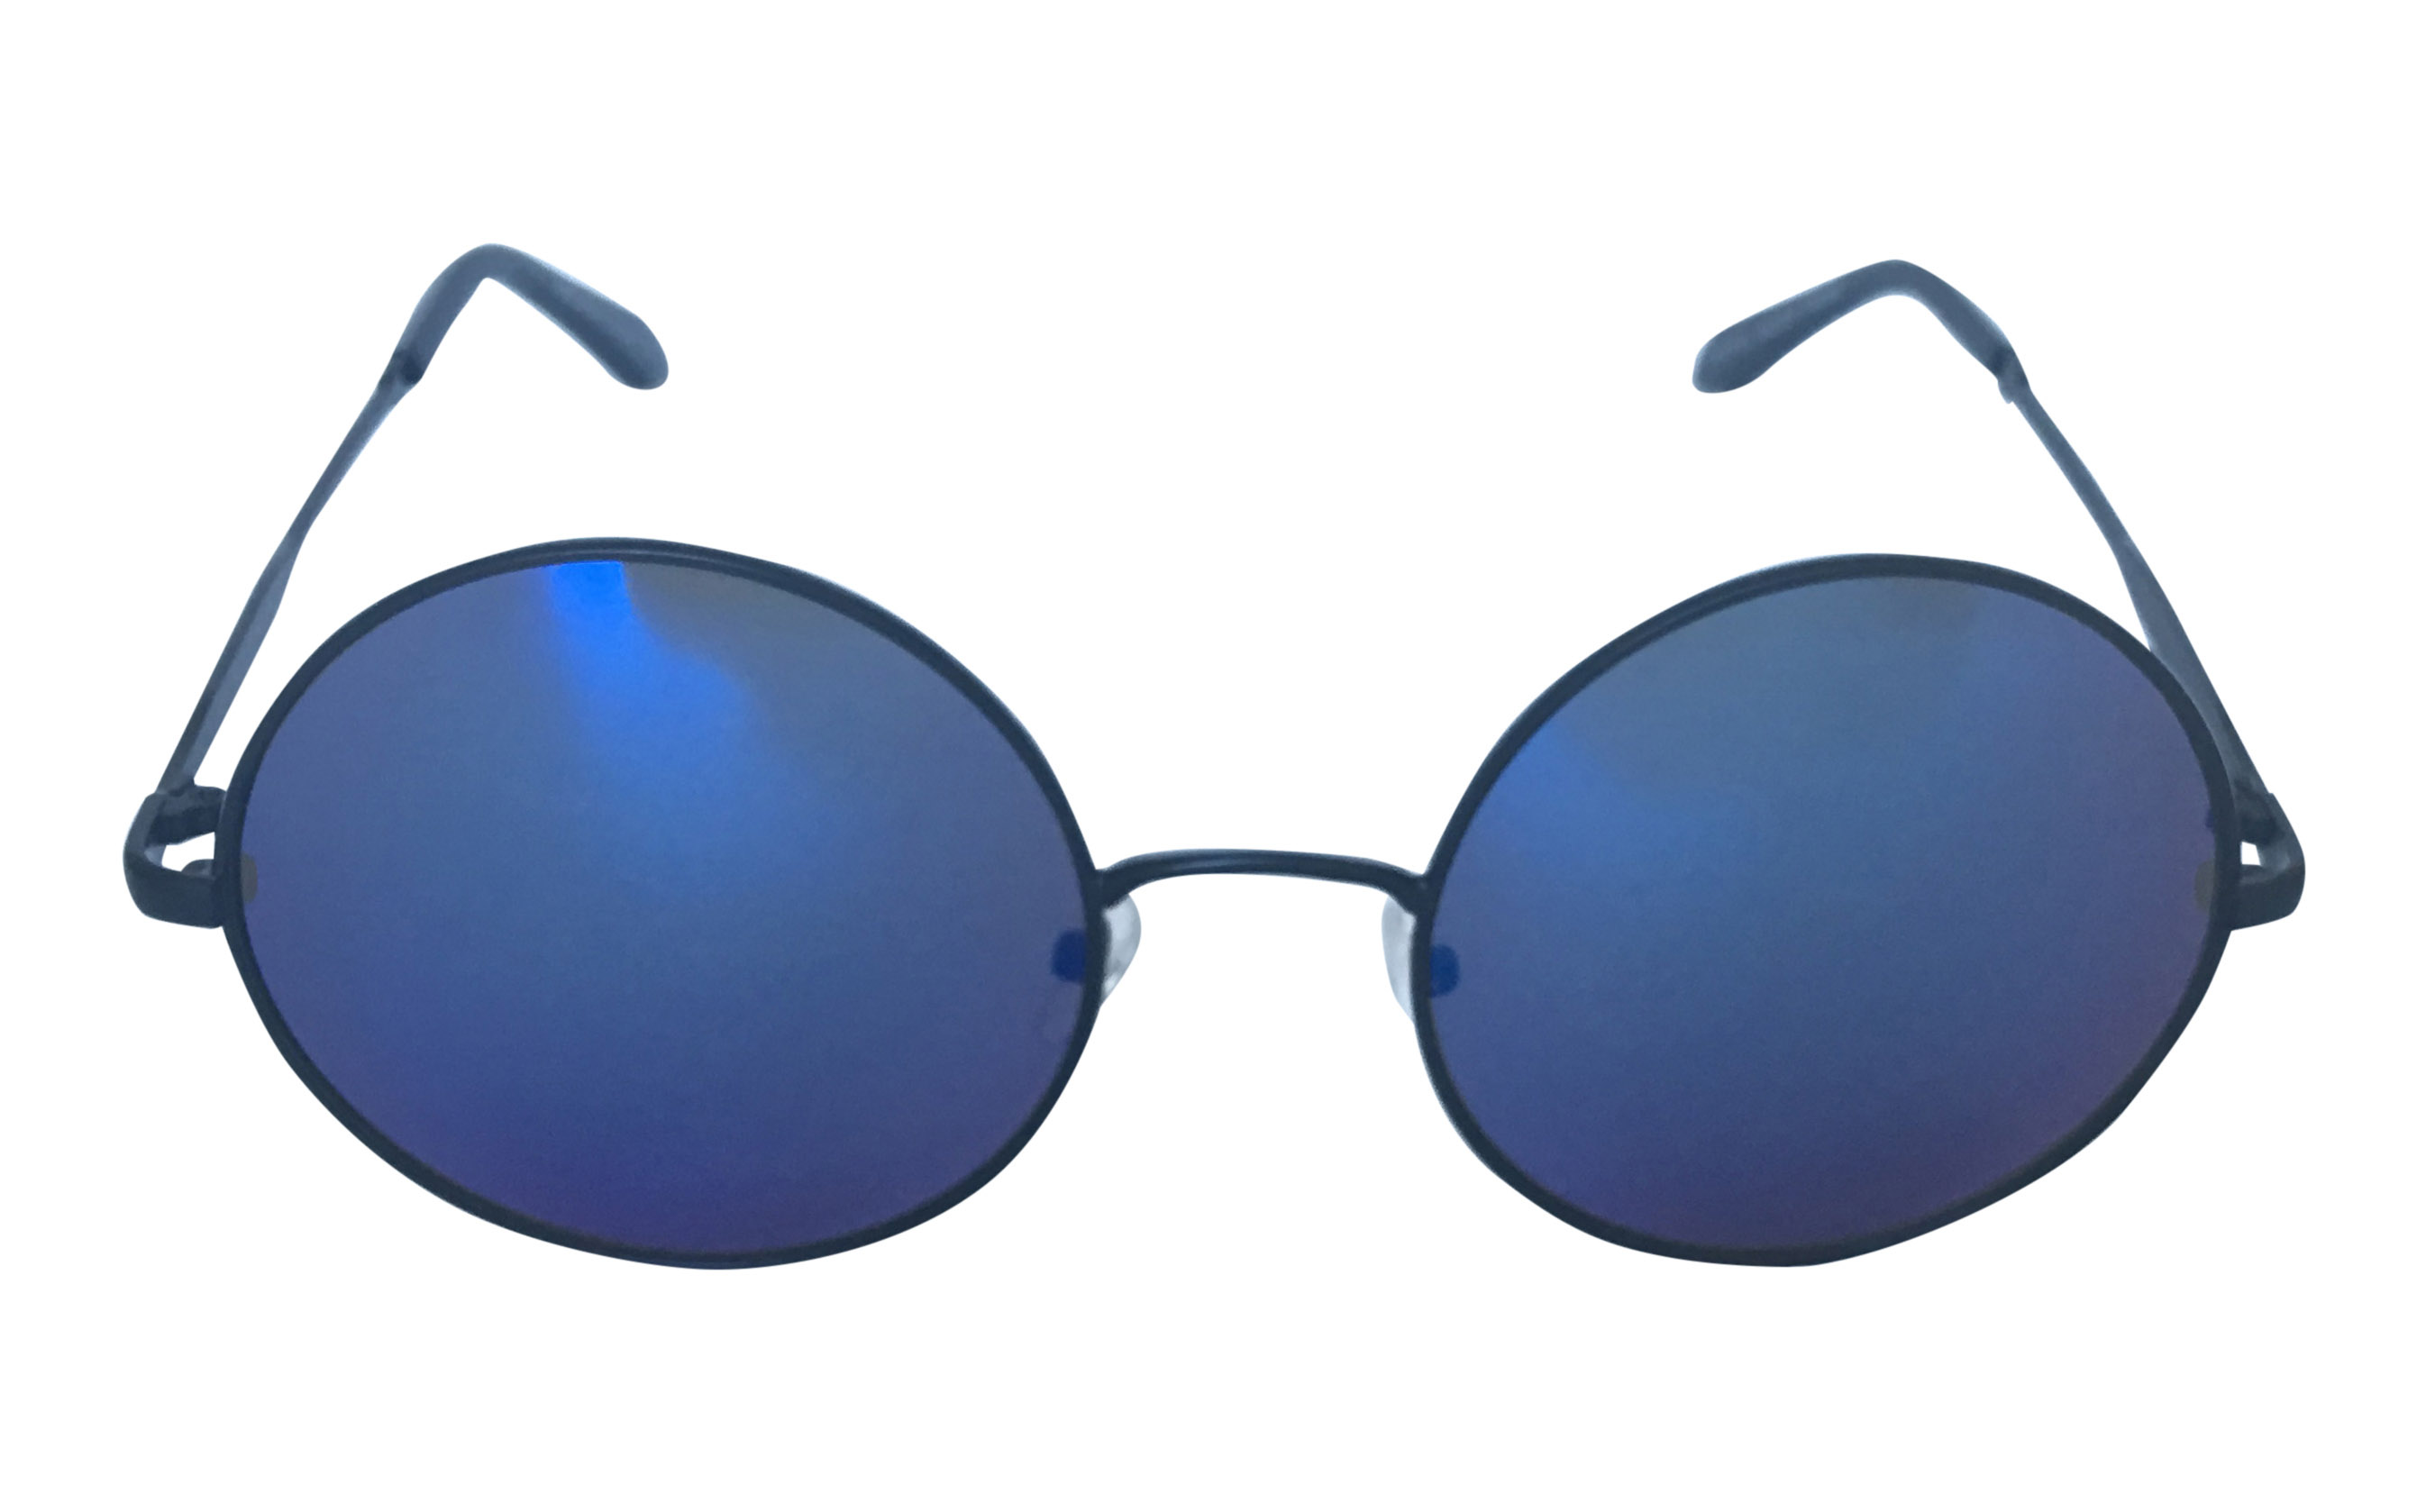 Metal solbrille i oversize design. Sort metal stel med blålige spejlglas. | search